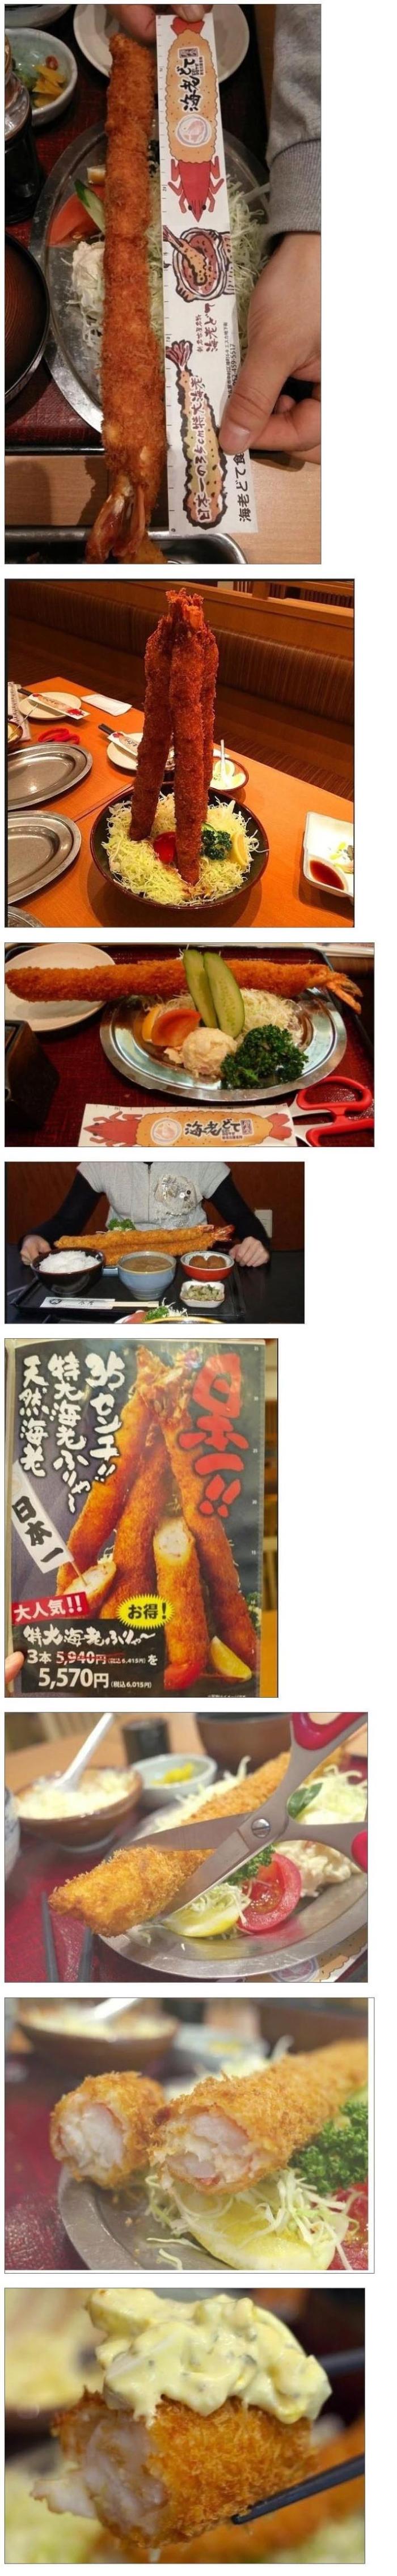 일본의 초대형 새우튀김